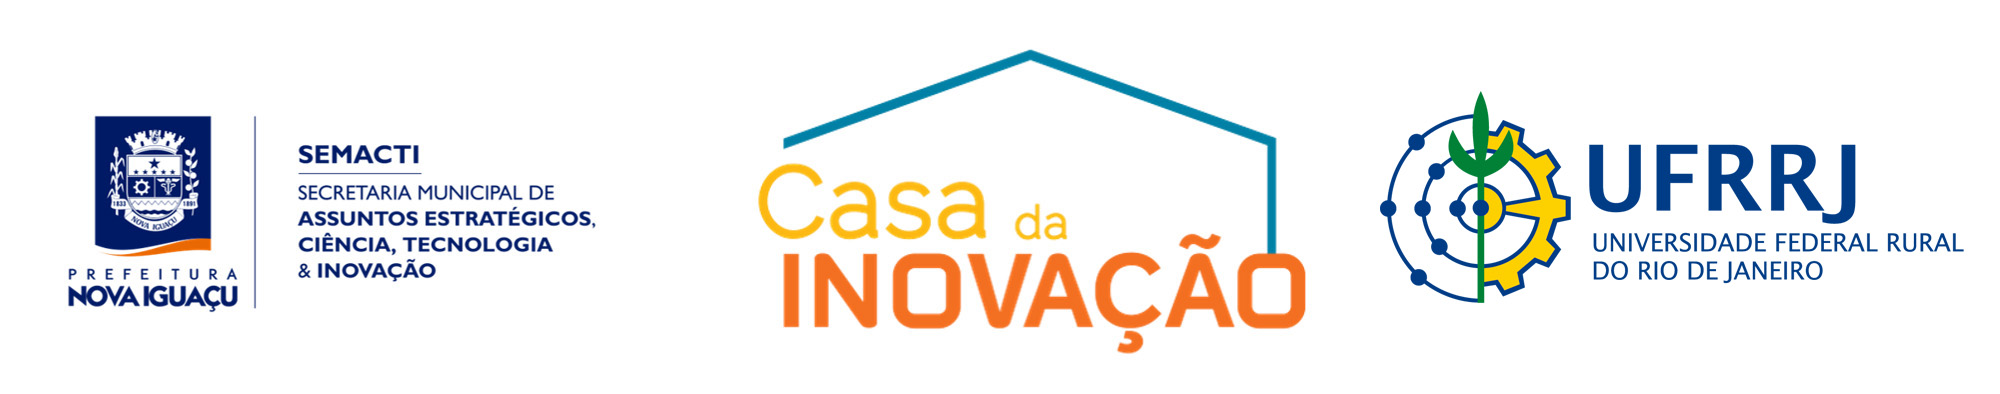 Logo da Casa da Inovação, prefeitura e da marca InovaIguaçu